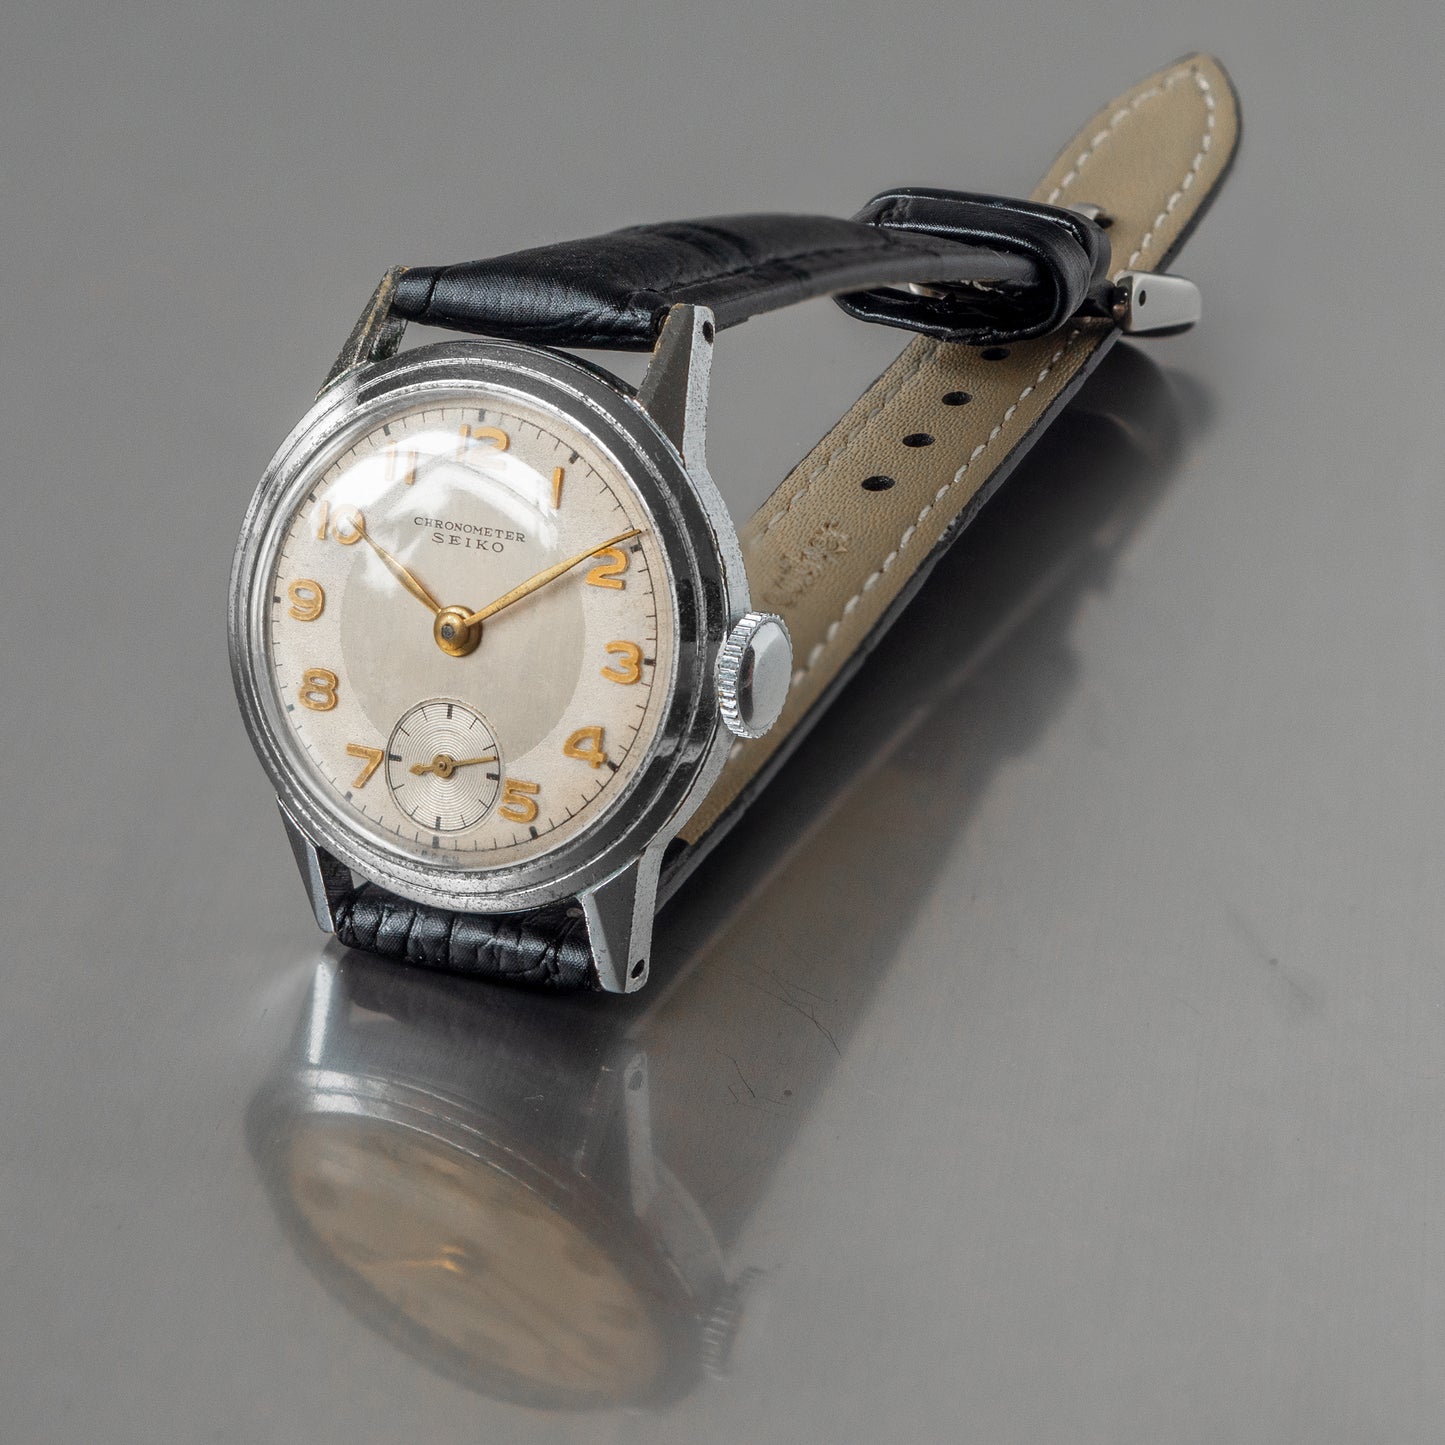 No. 524 / Seiko Sm. Sec. Chronometer - 1952